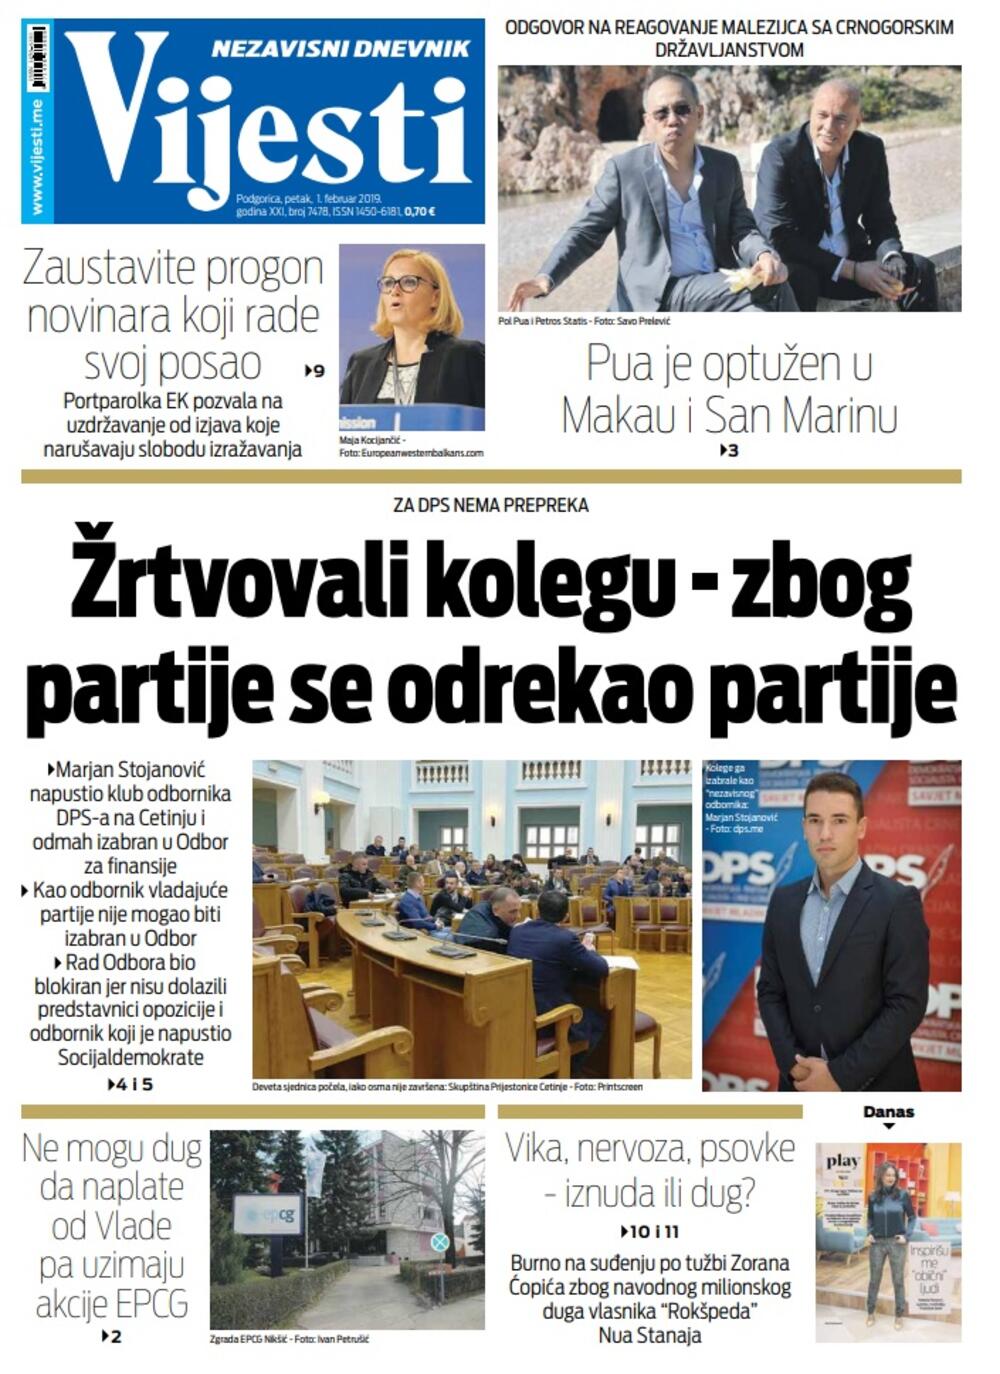 Naslovna strana "Vijesti" za 1. februar, Foto: Vijesti